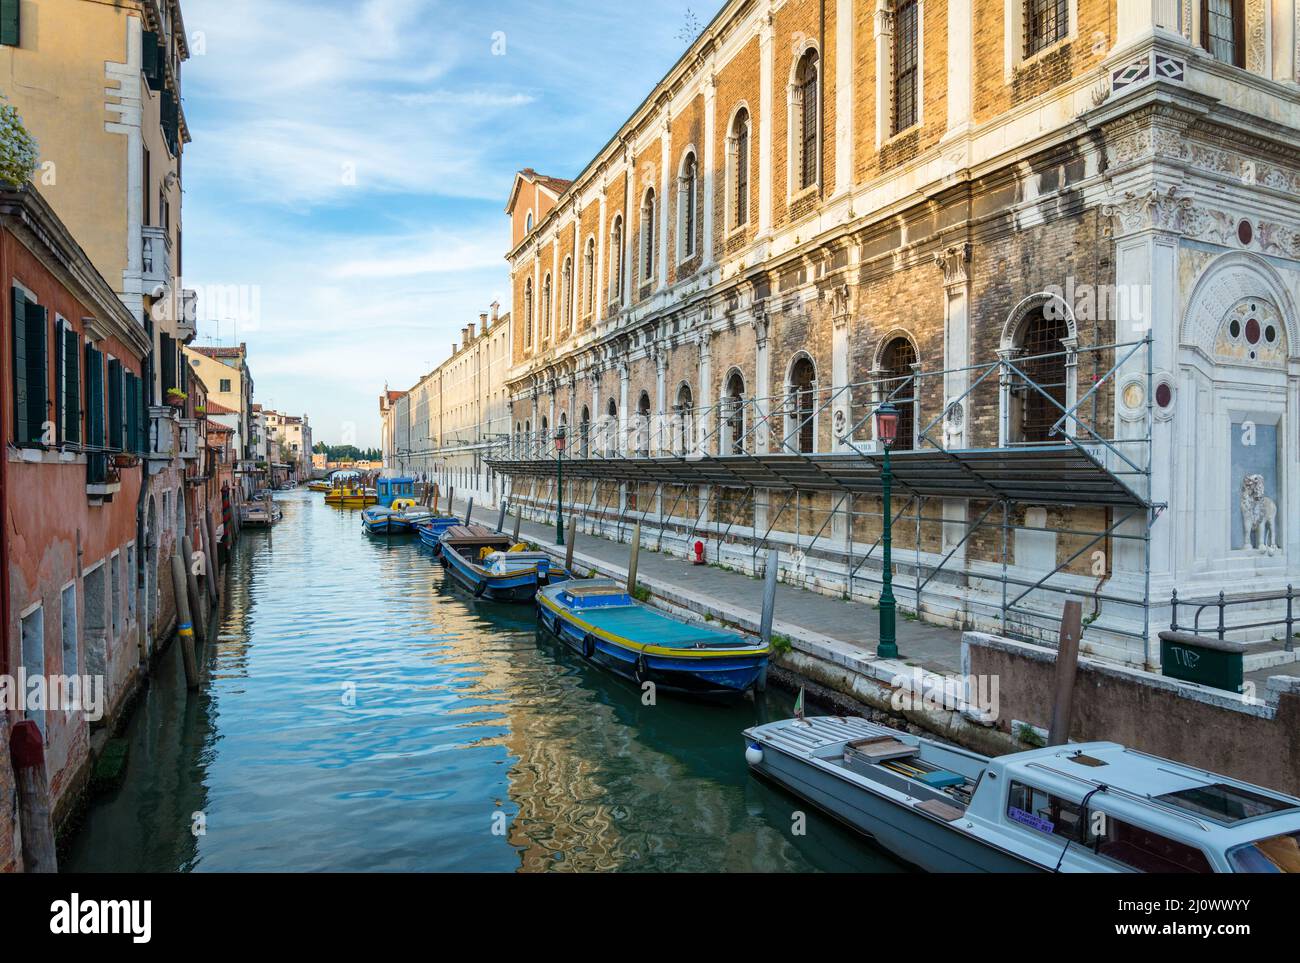 Venice Scuola grande di san marco with canal Stock Photo